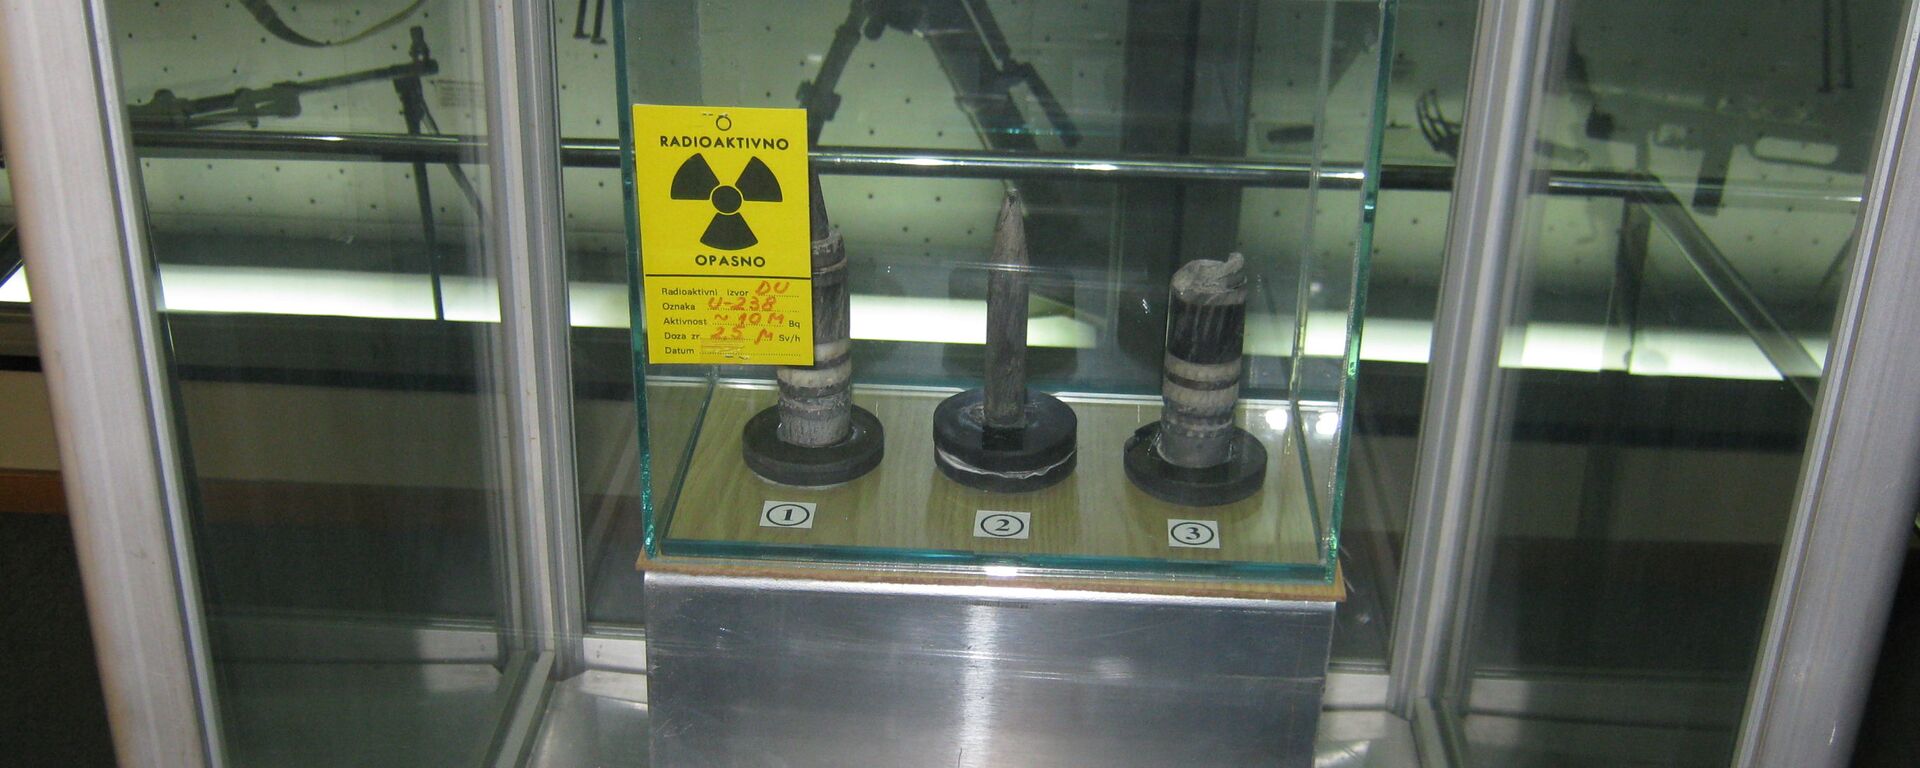 Ostaci bombi sa osiromašenim uranijumom koje su korištene tokom NATO agresije na SRJ 1999. godine - Sputnik Srbija, 1920, 09.06.2021